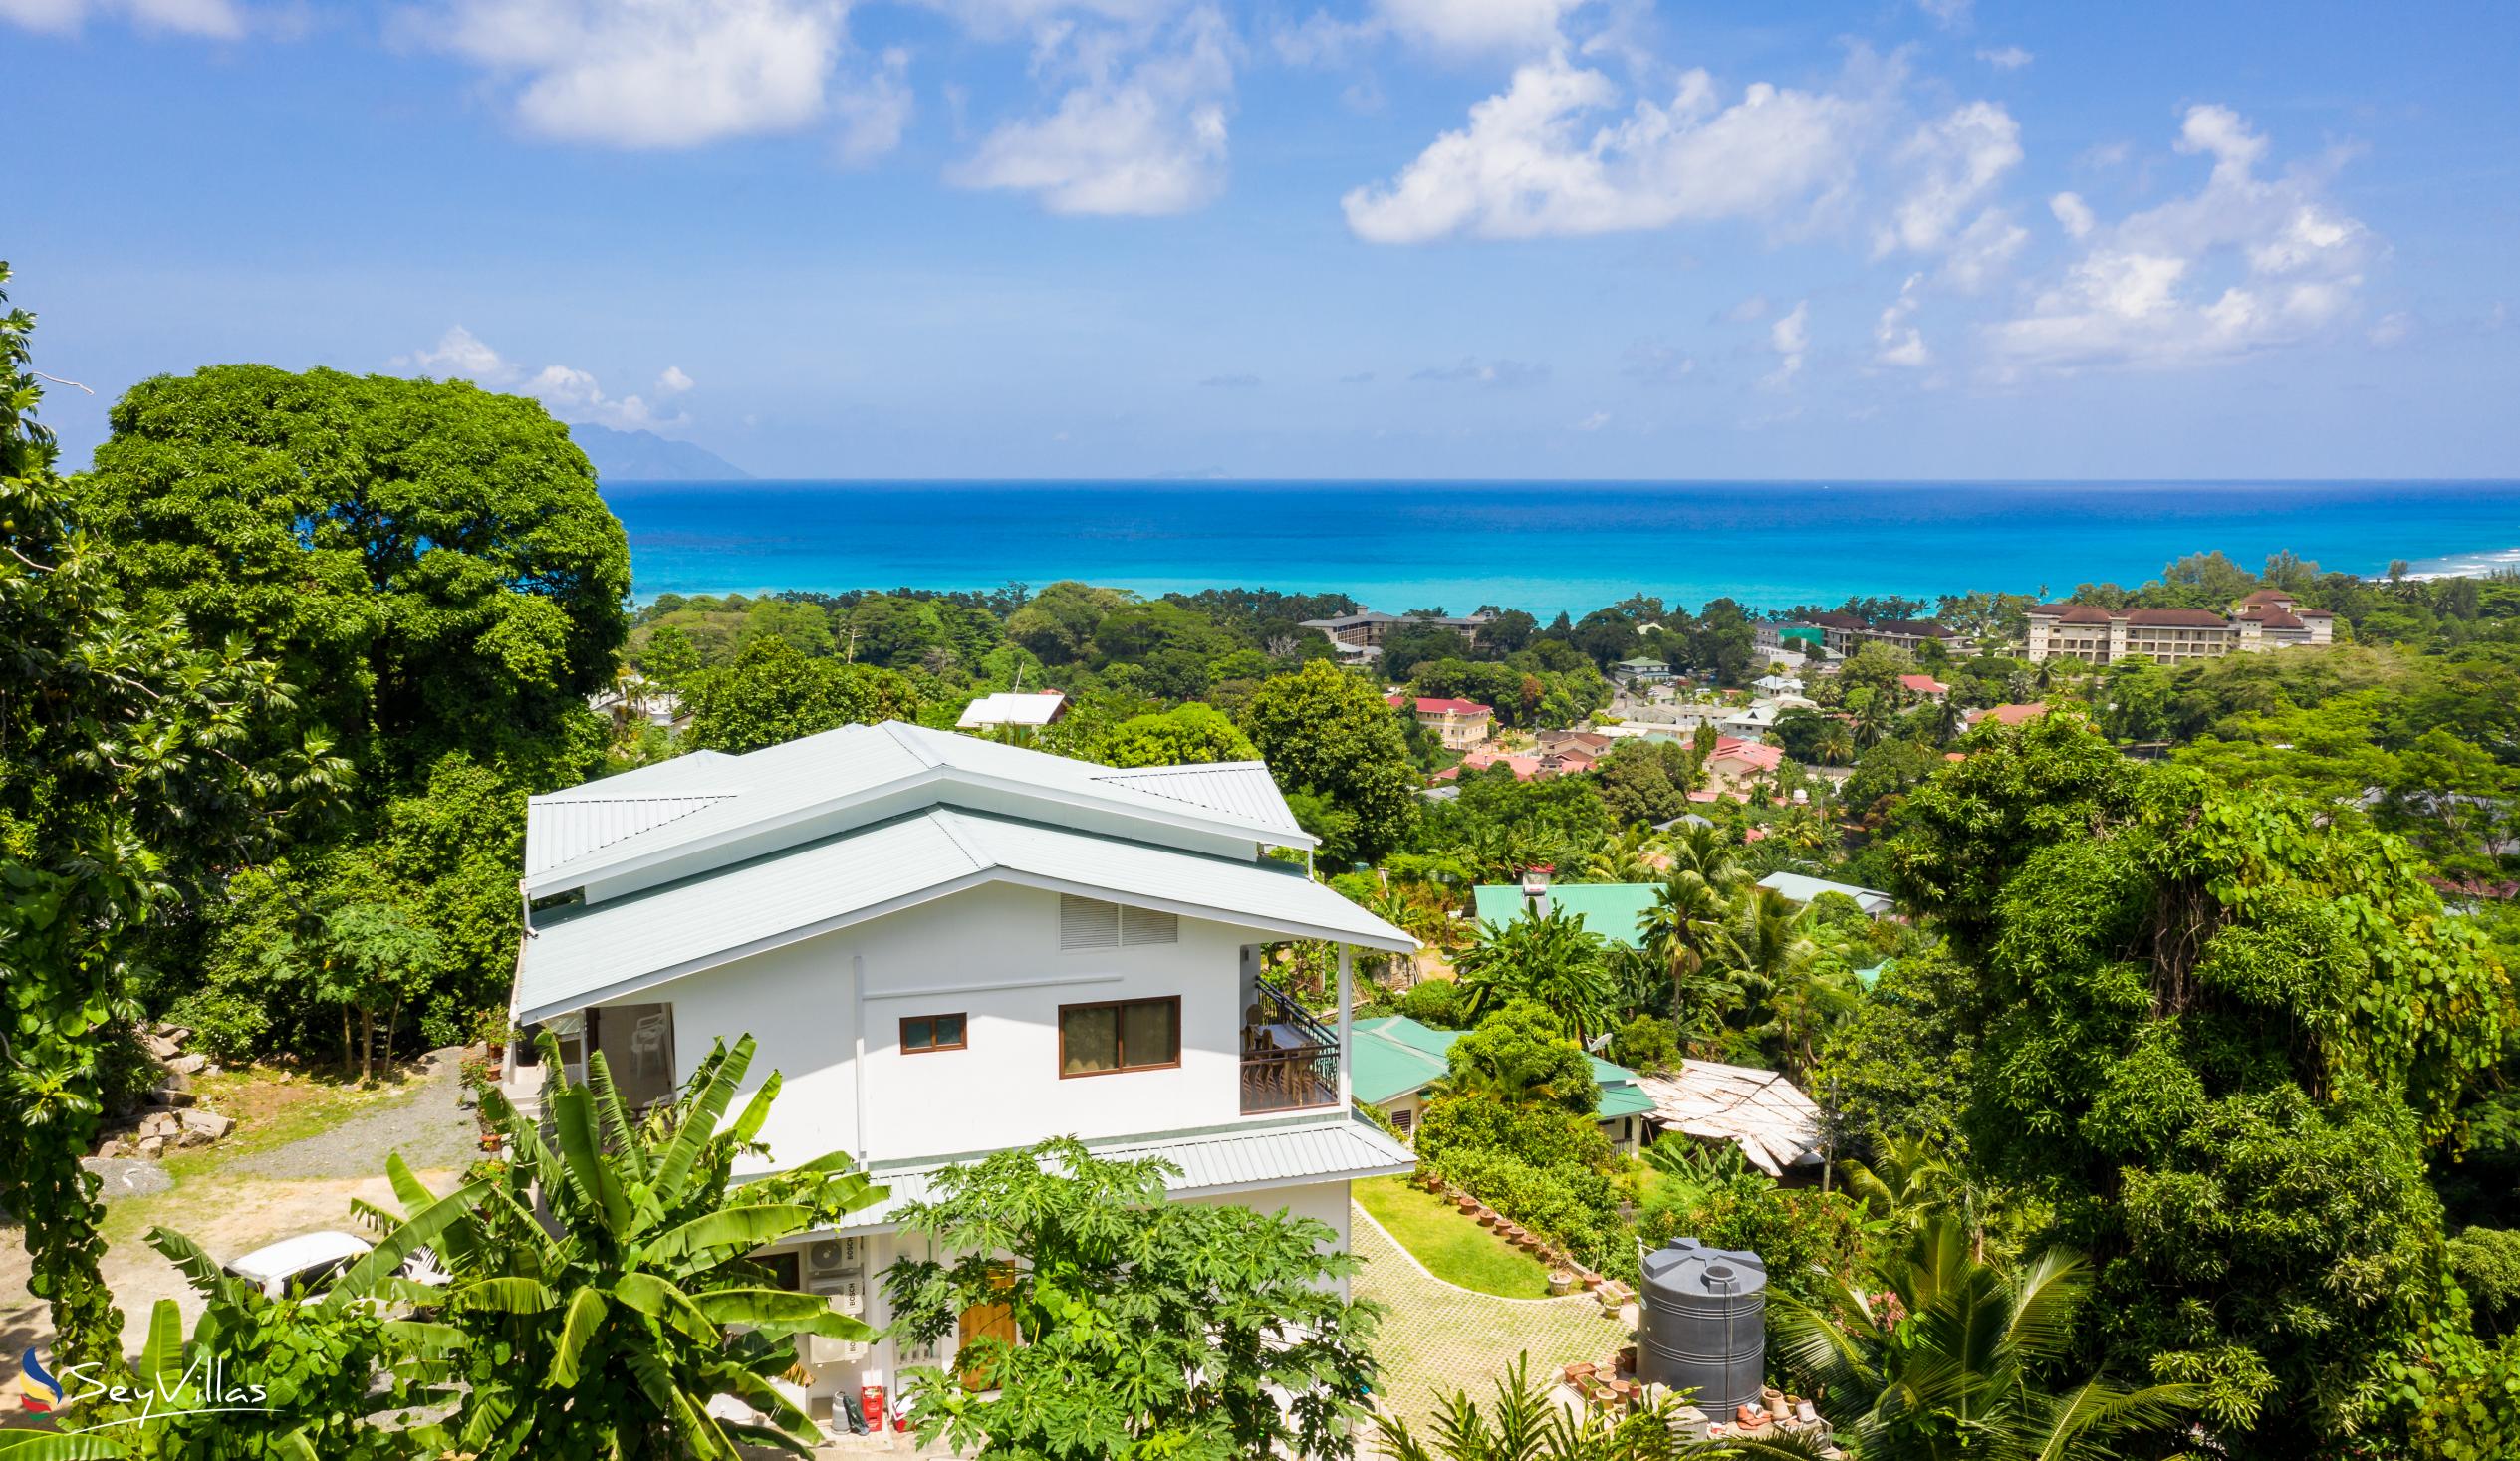 Photo 7: Tama's Holiday Apartments - Outdoor area - Mahé (Seychelles)